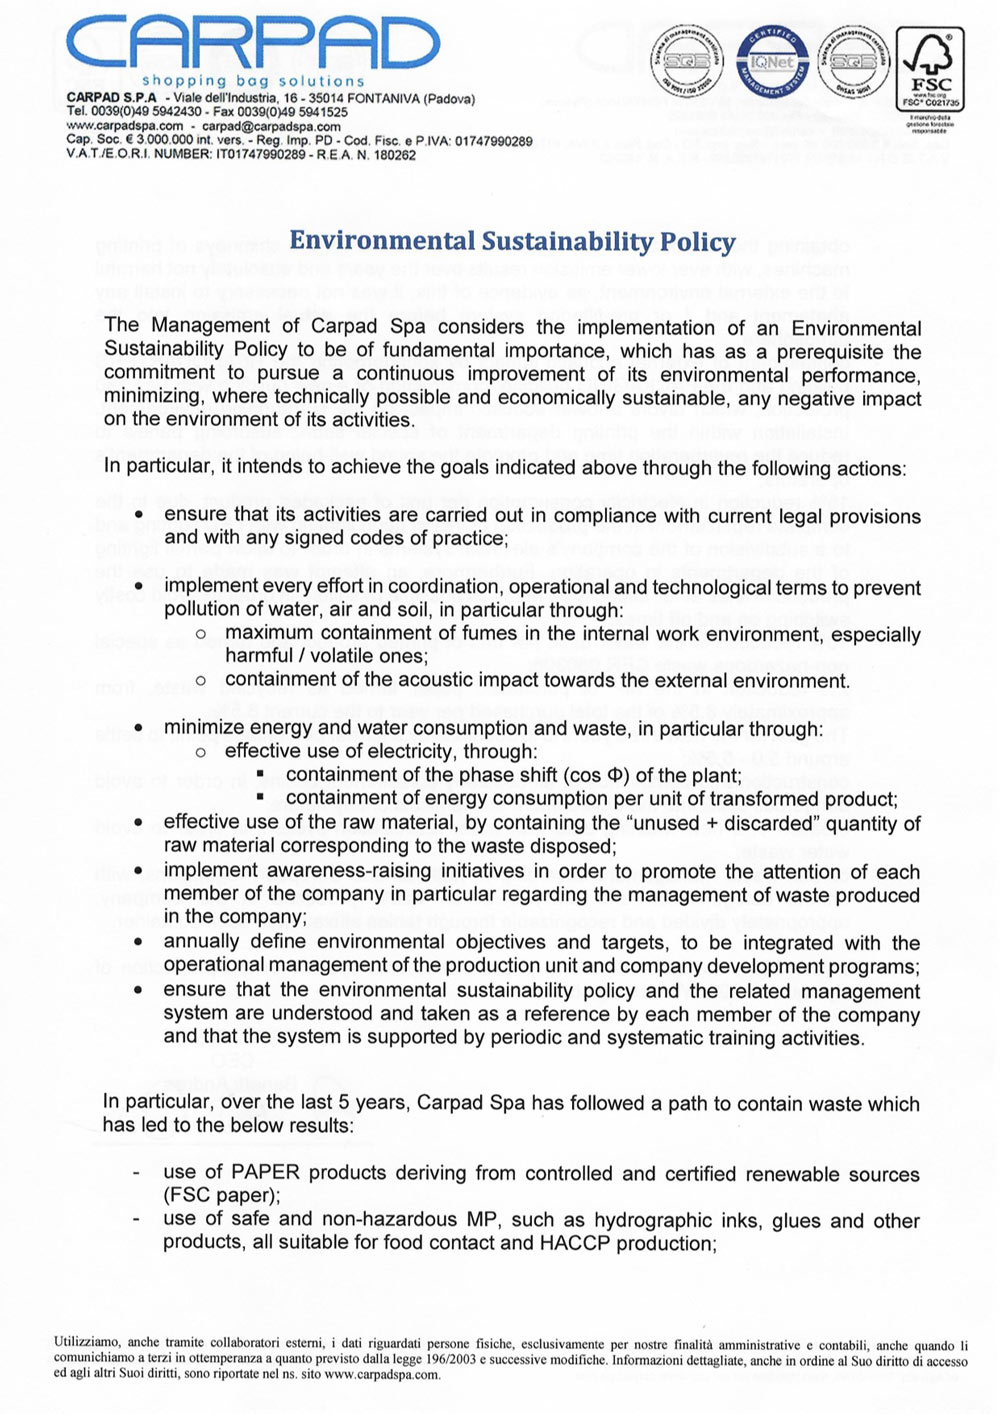 Certification - Policy sostenibilità ambientale